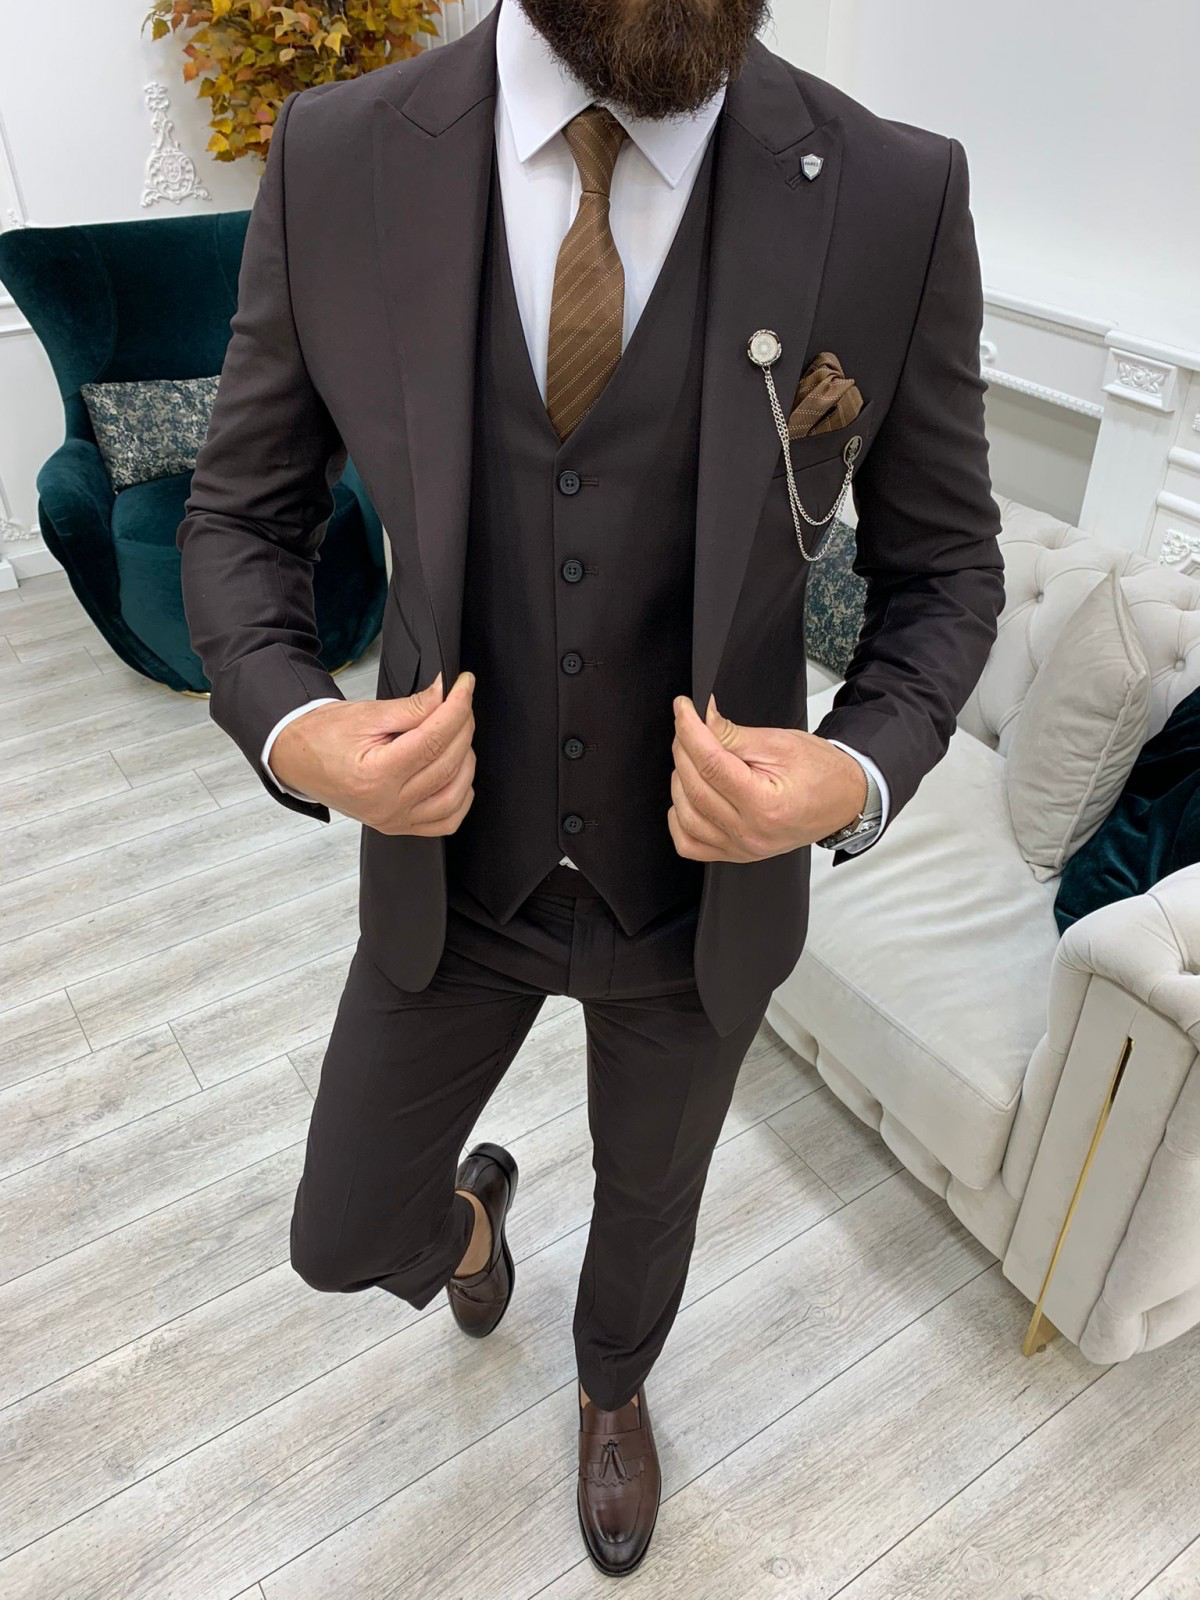 Buy Black Slim-fit Italian Cut Pinstripe Suit Men Suit for Men 3 Piece  Stripe Party Suit Black Wedding Suit Black Slim-fit Striped Suit Online in  India - Etsy